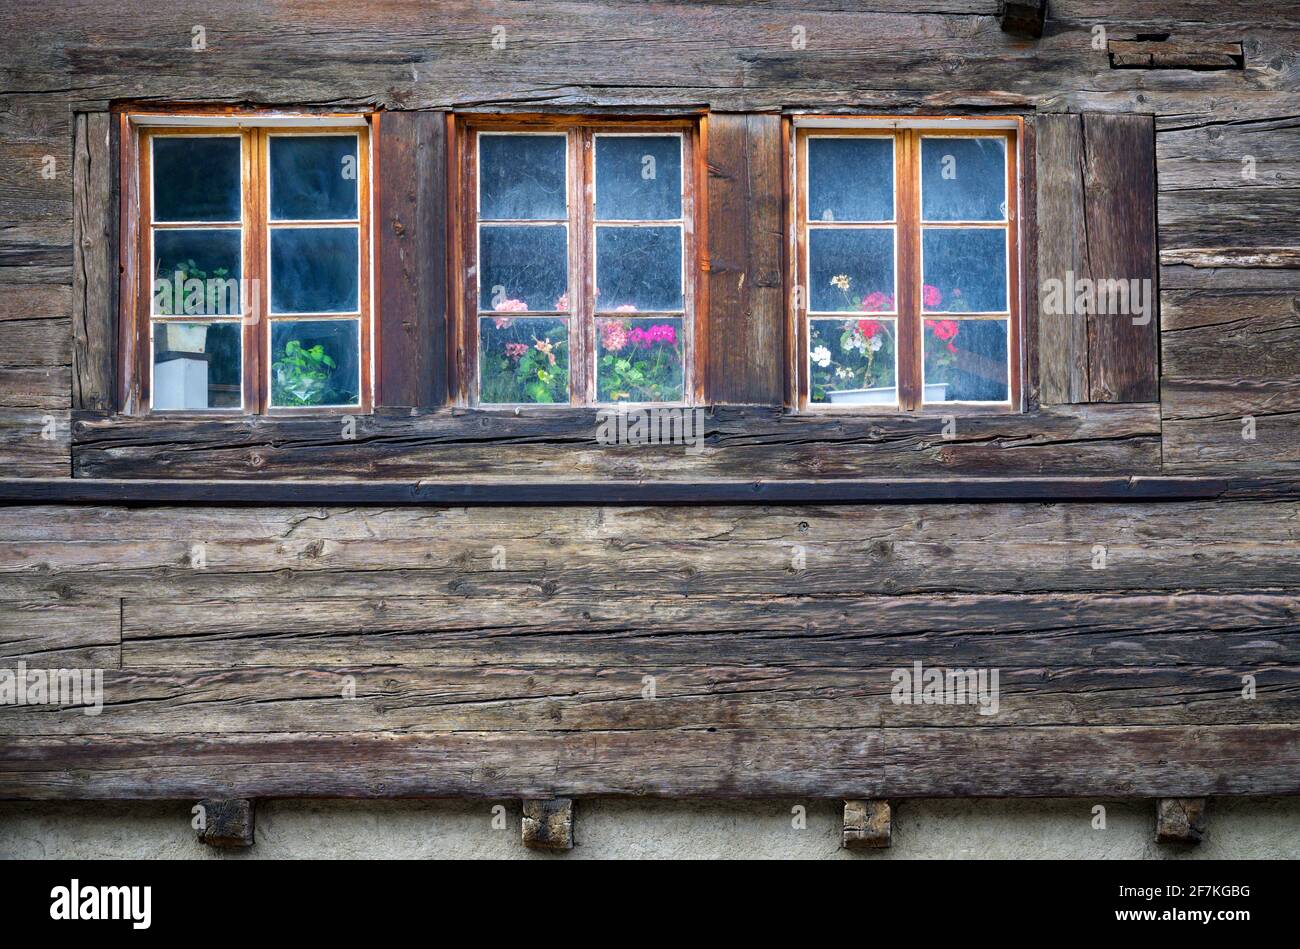 Alte rustikale Fenster mit Blumentöpfen auf einem rustikalen Alpenhaus aus  Holz, Oberwald, Schweiz Stockfotografie - Alamy